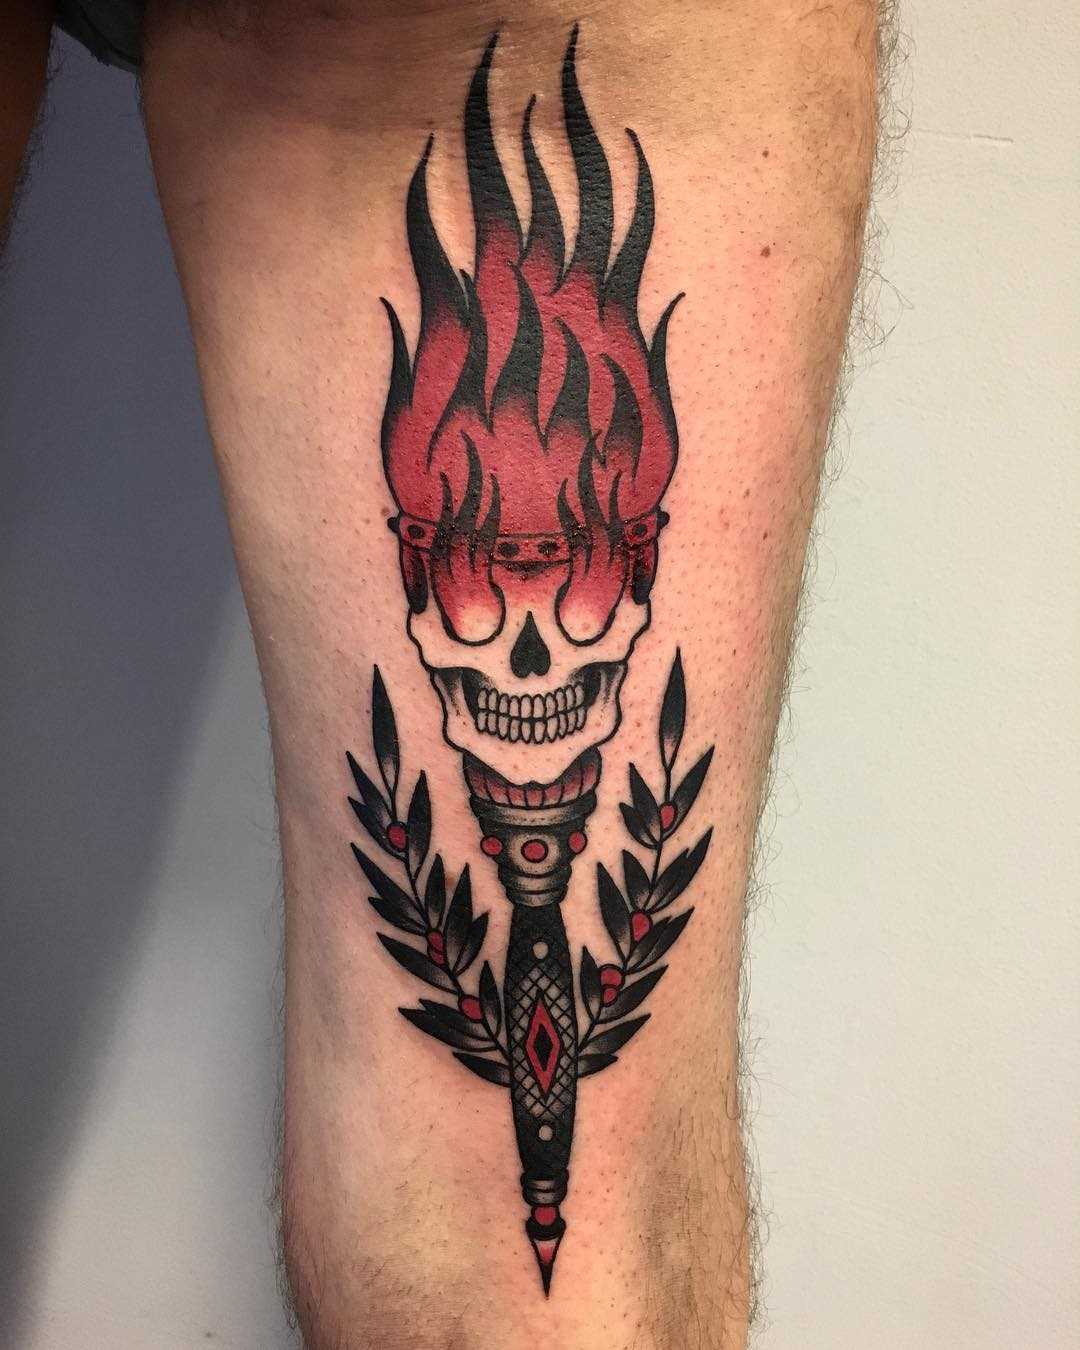 Tatuagem de uma tocha com um crânio na mão de um cara